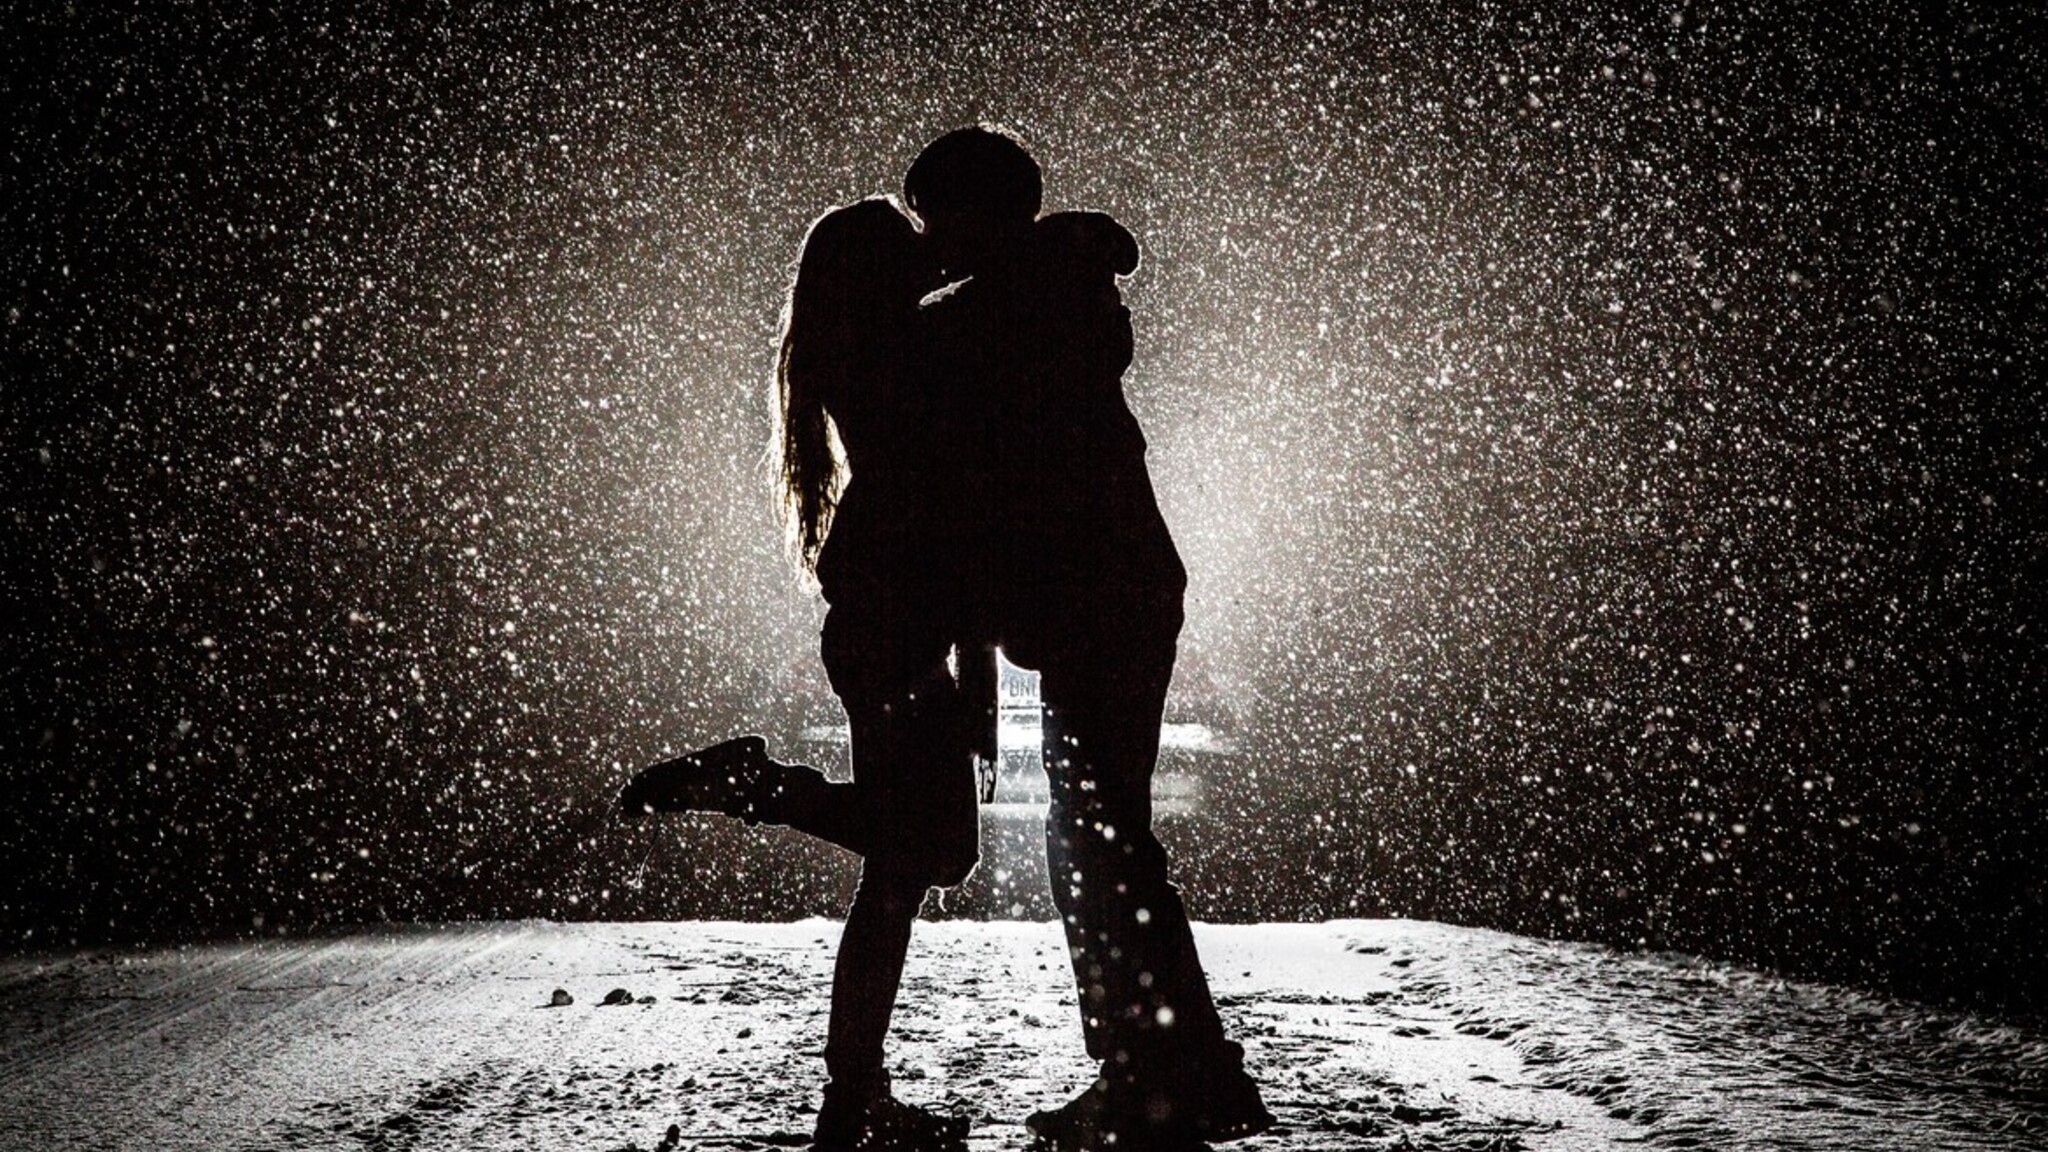 로맨틱 커플 배경 키스,로맨스,서 있는,검정색과 흰색,사진술,물